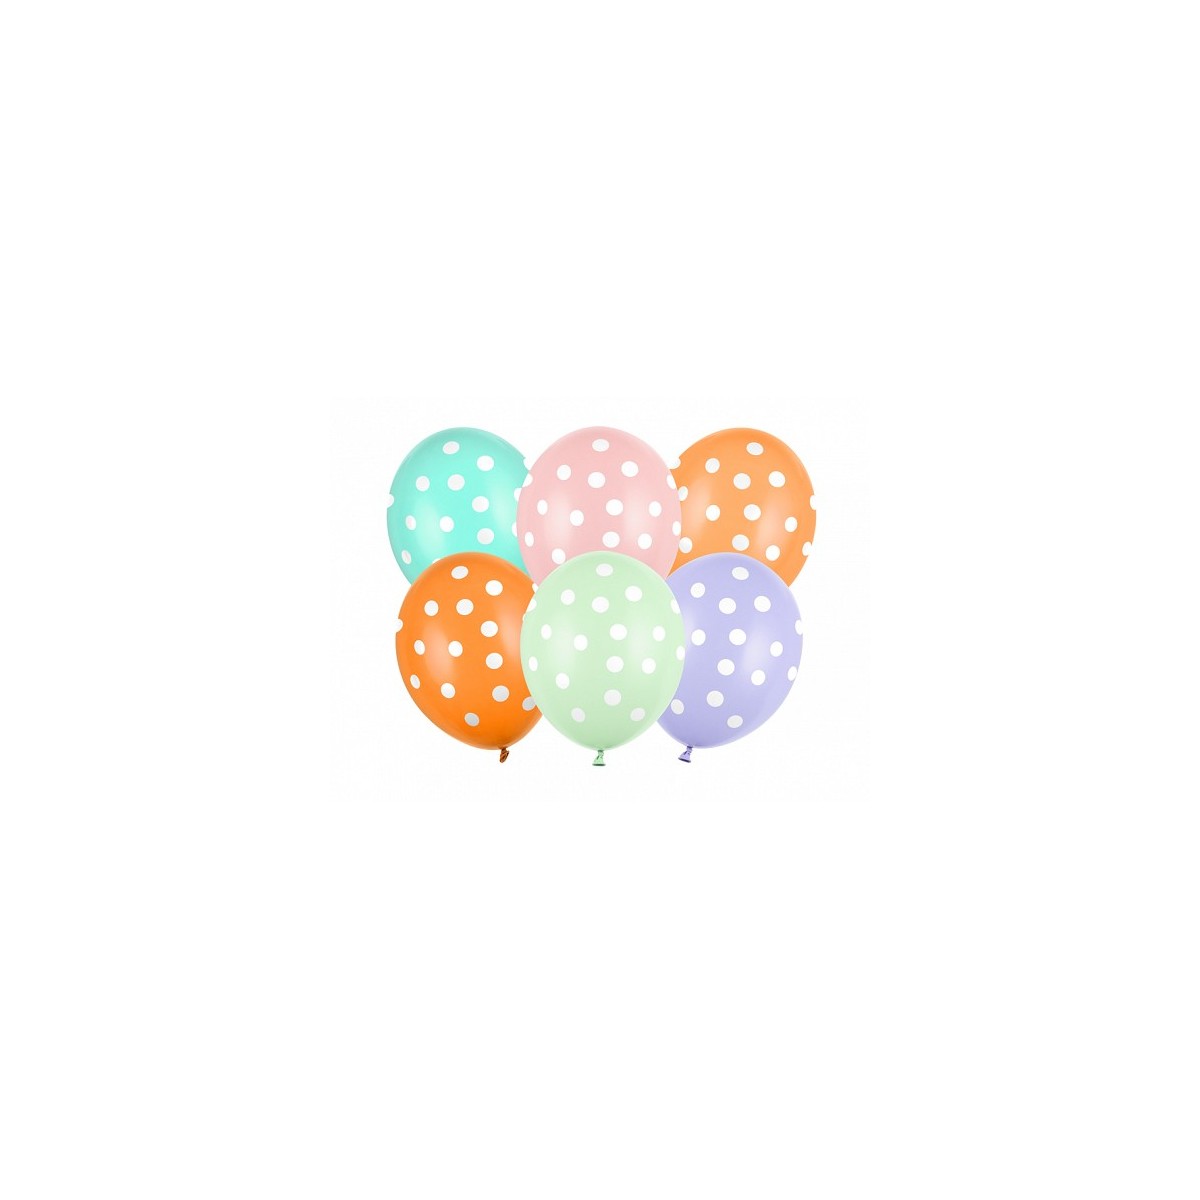 6 ballons multicolores à pois blancs